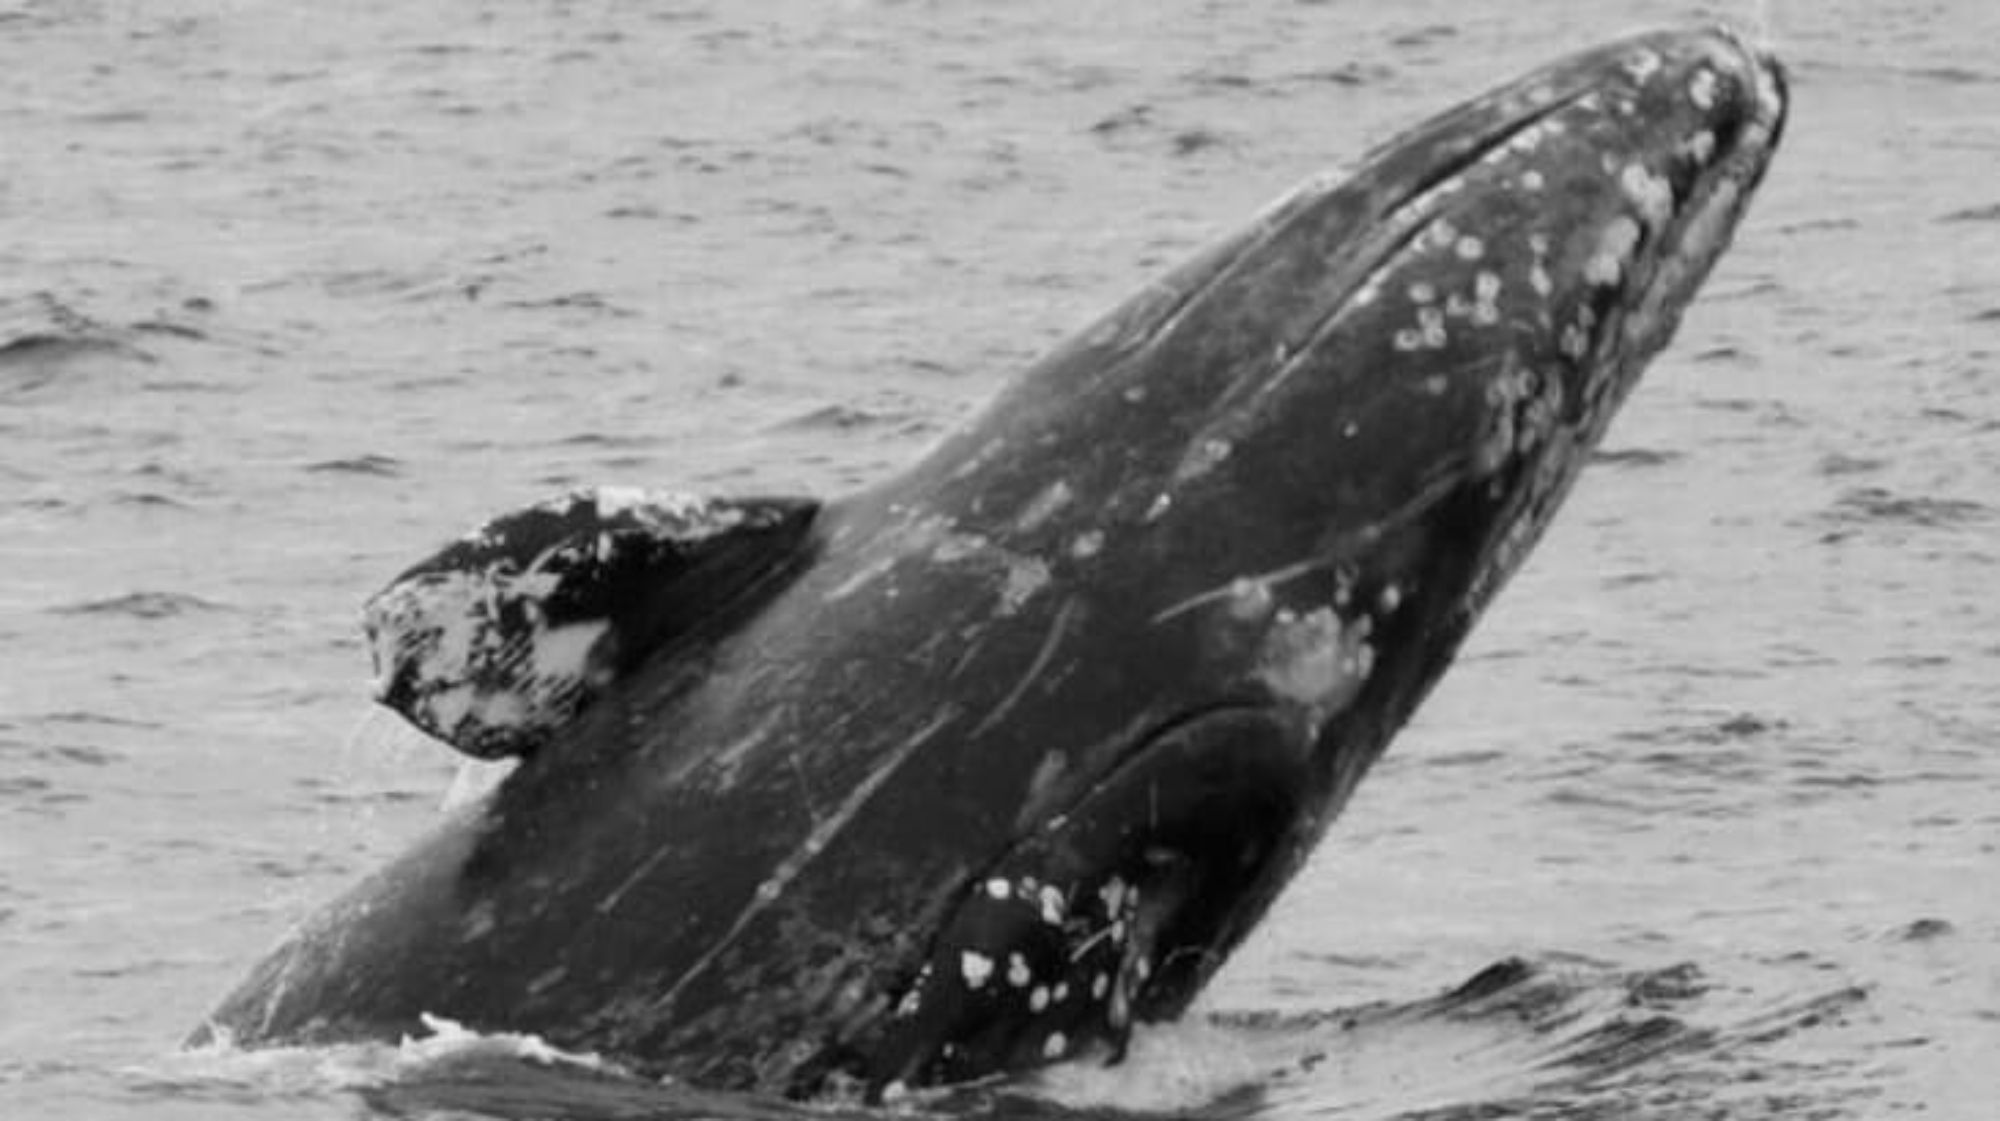 kenai fjords whale watching tour